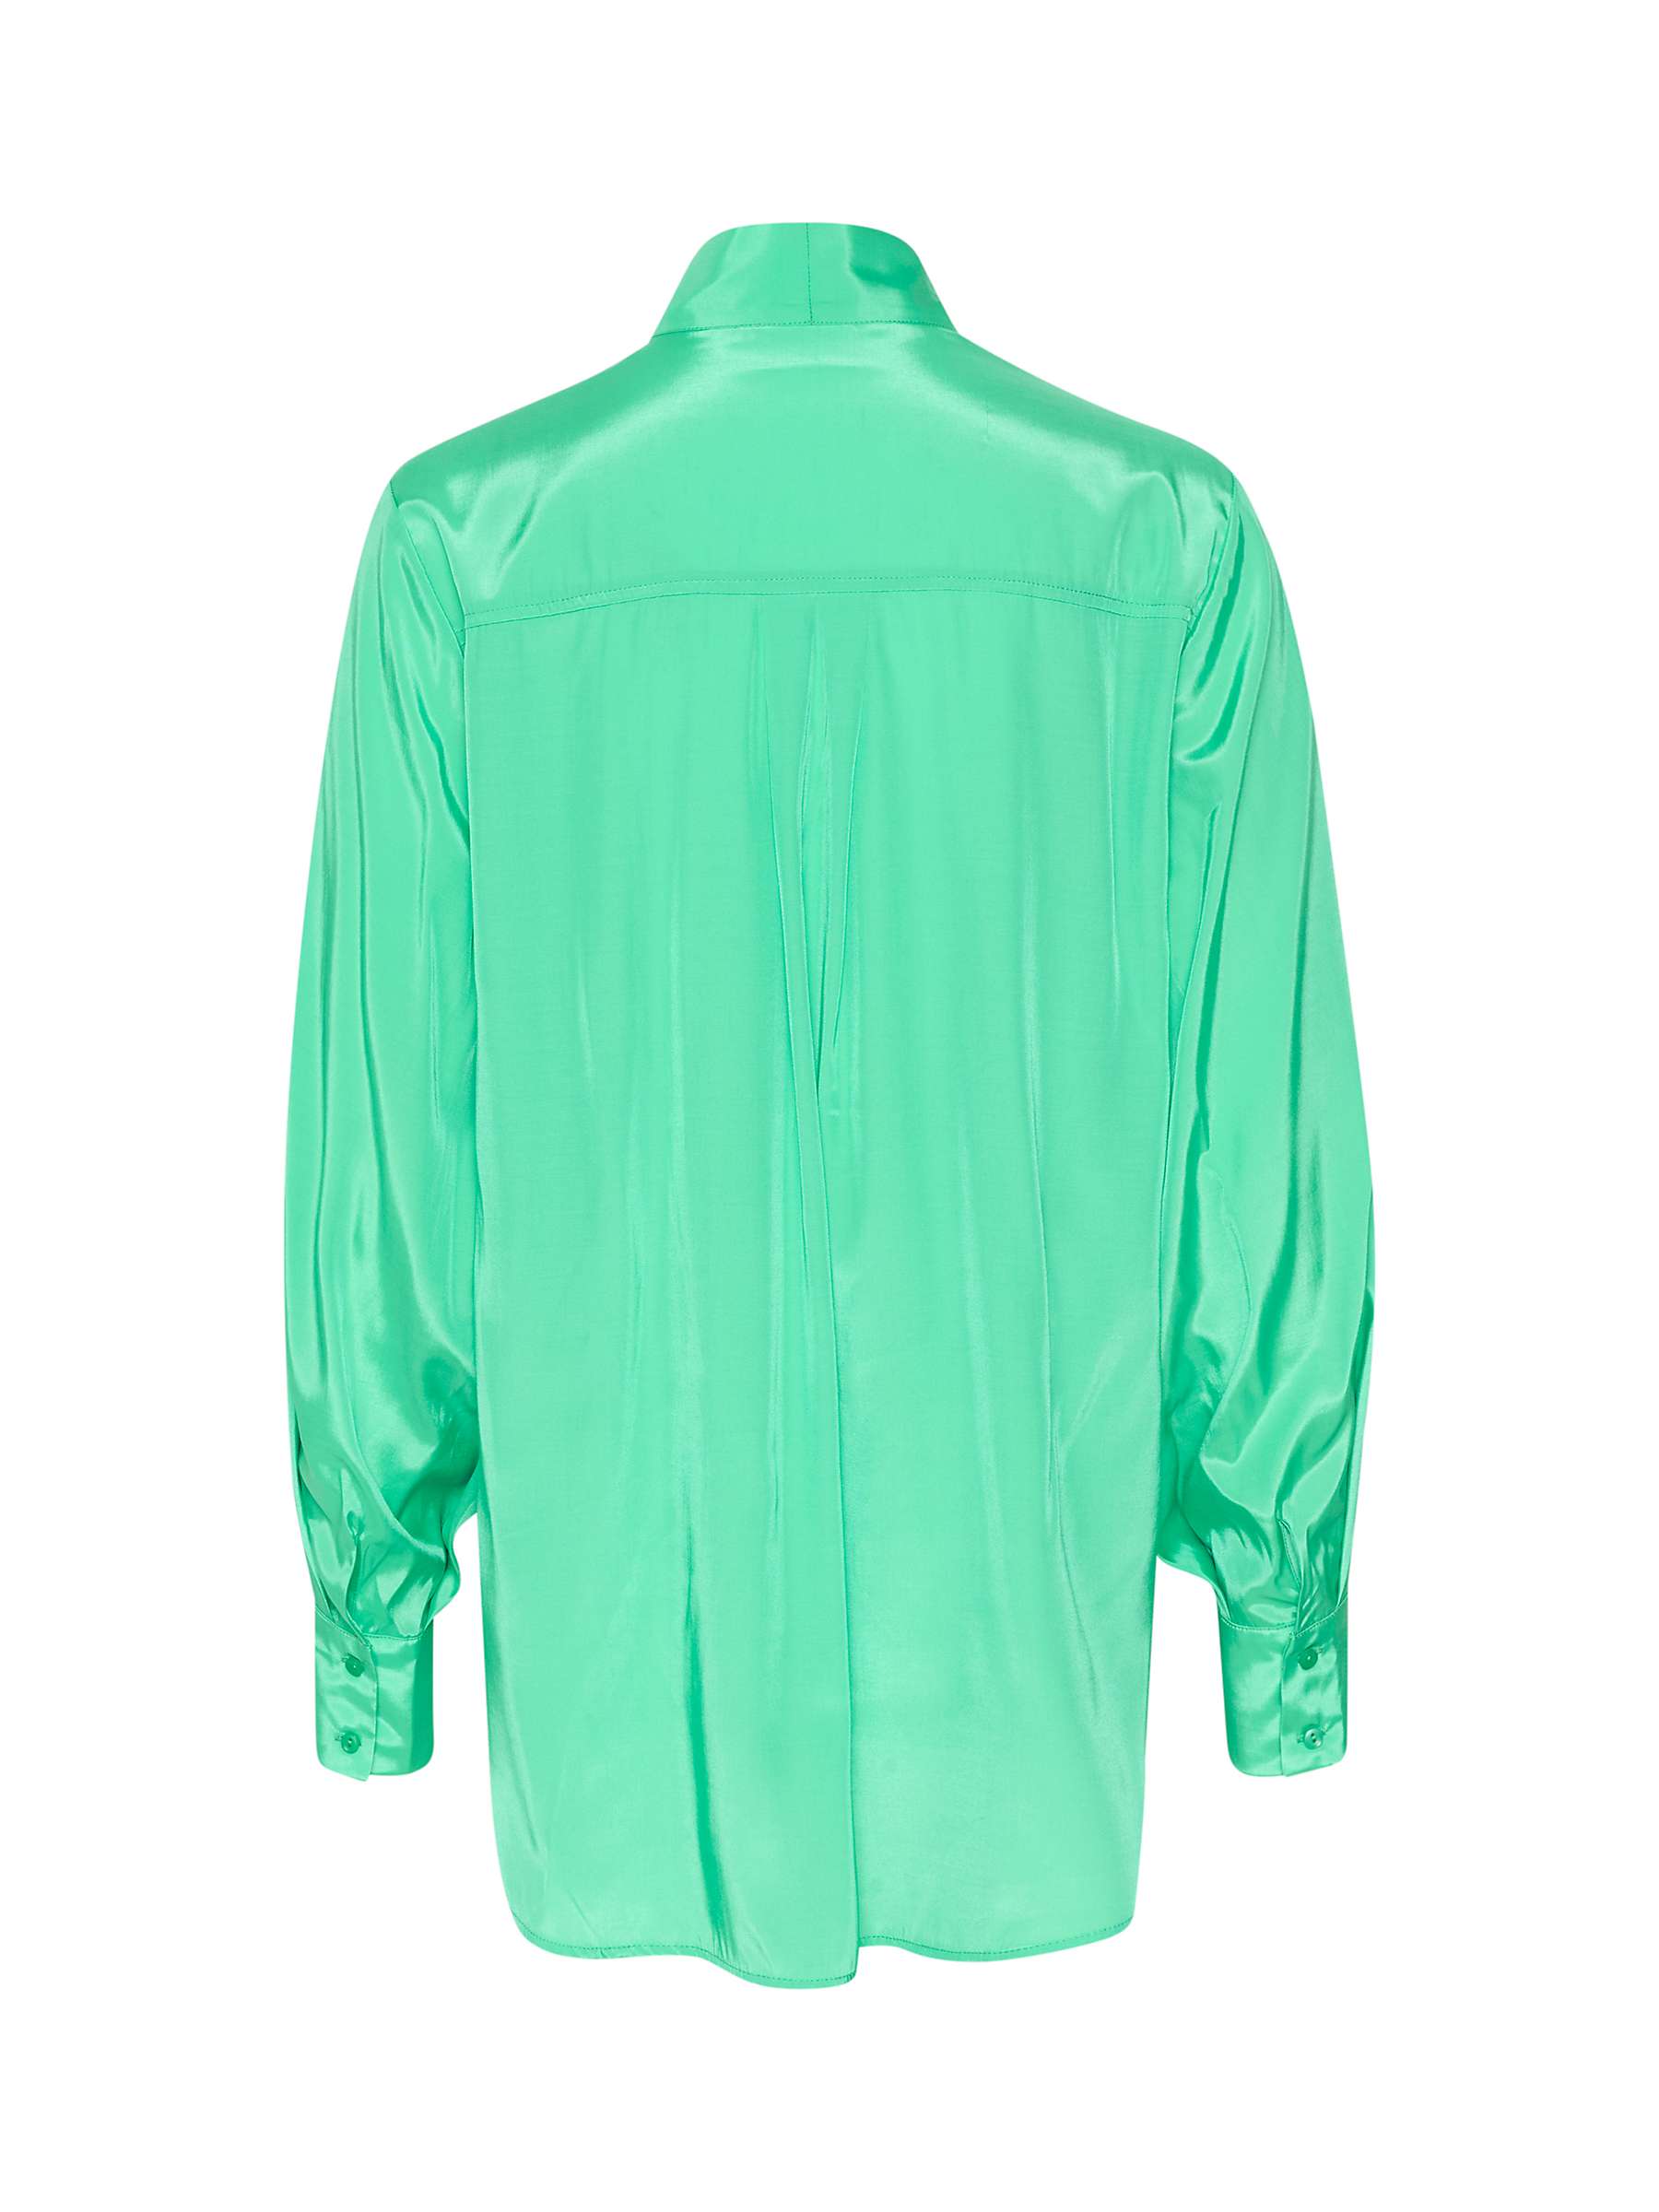 Buy KAFFE Loren Bow Neck Shirt, Gumdrop Green Online at johnlewis.com